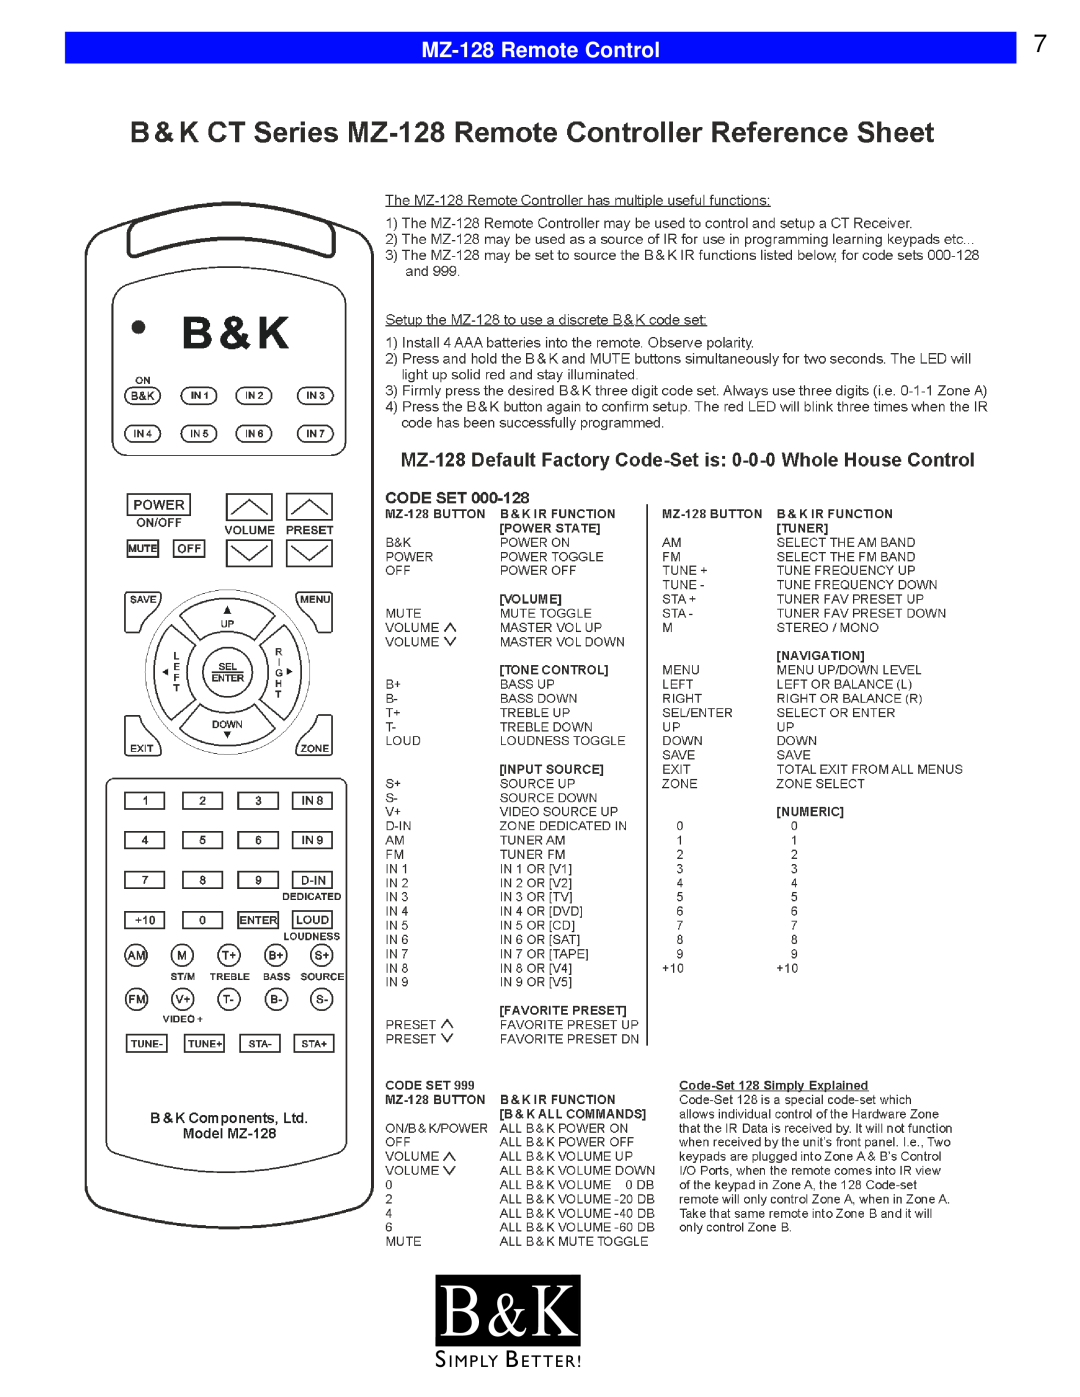 B&K CT602, CT600, CT310, CT610, CT300 user manual B & K, MZ-128Remote Control 